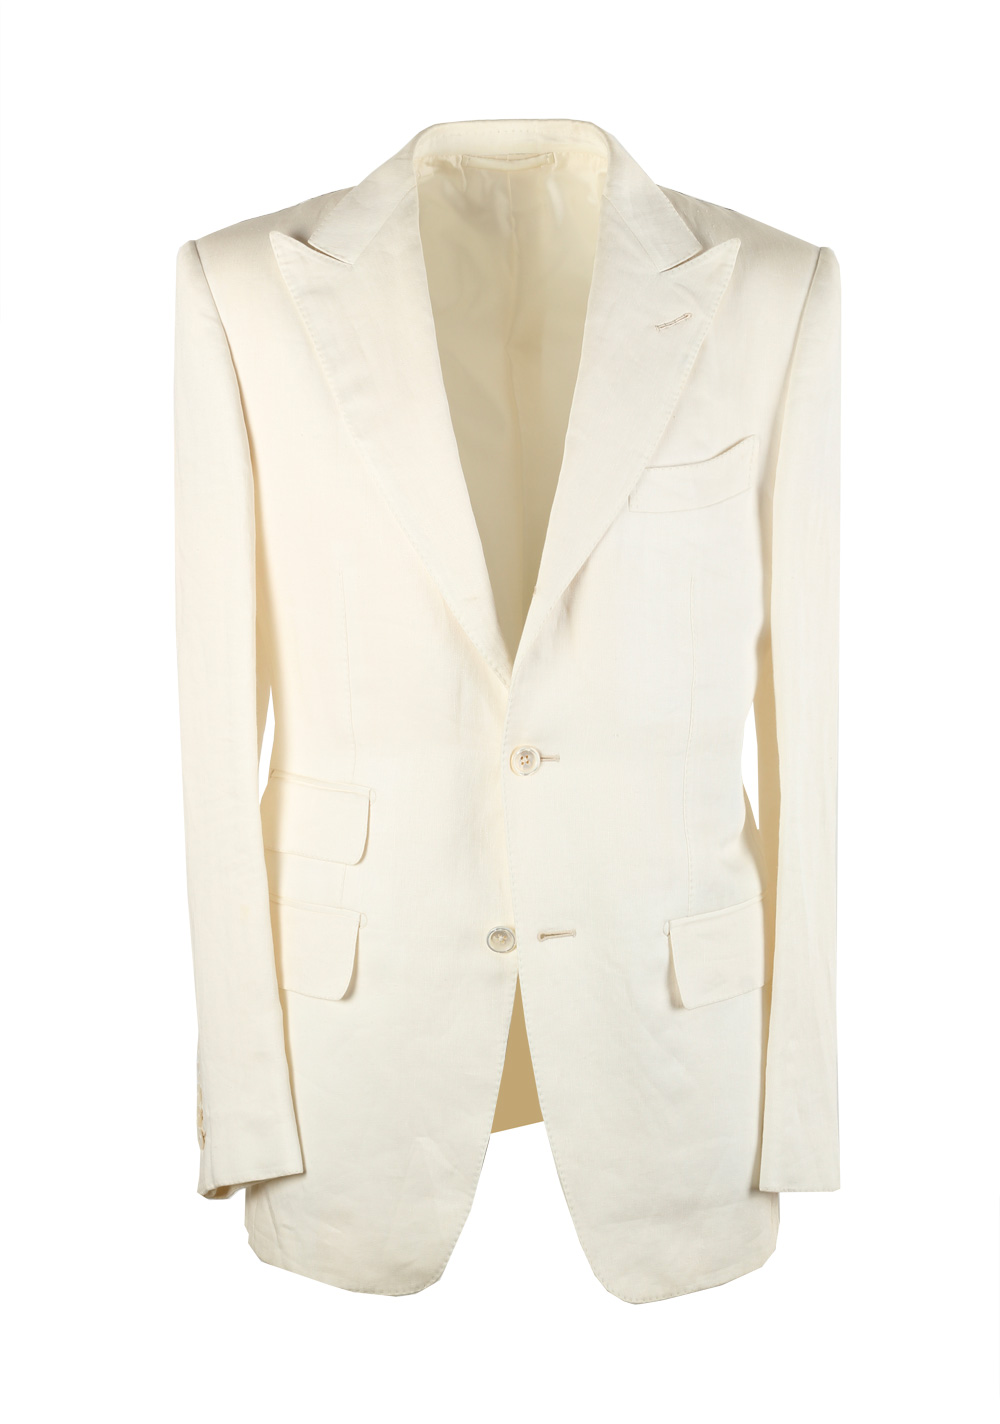 TOM FORD Regency Solid Off White Suit Size 46 / 36R U.S. Linen Base B ...